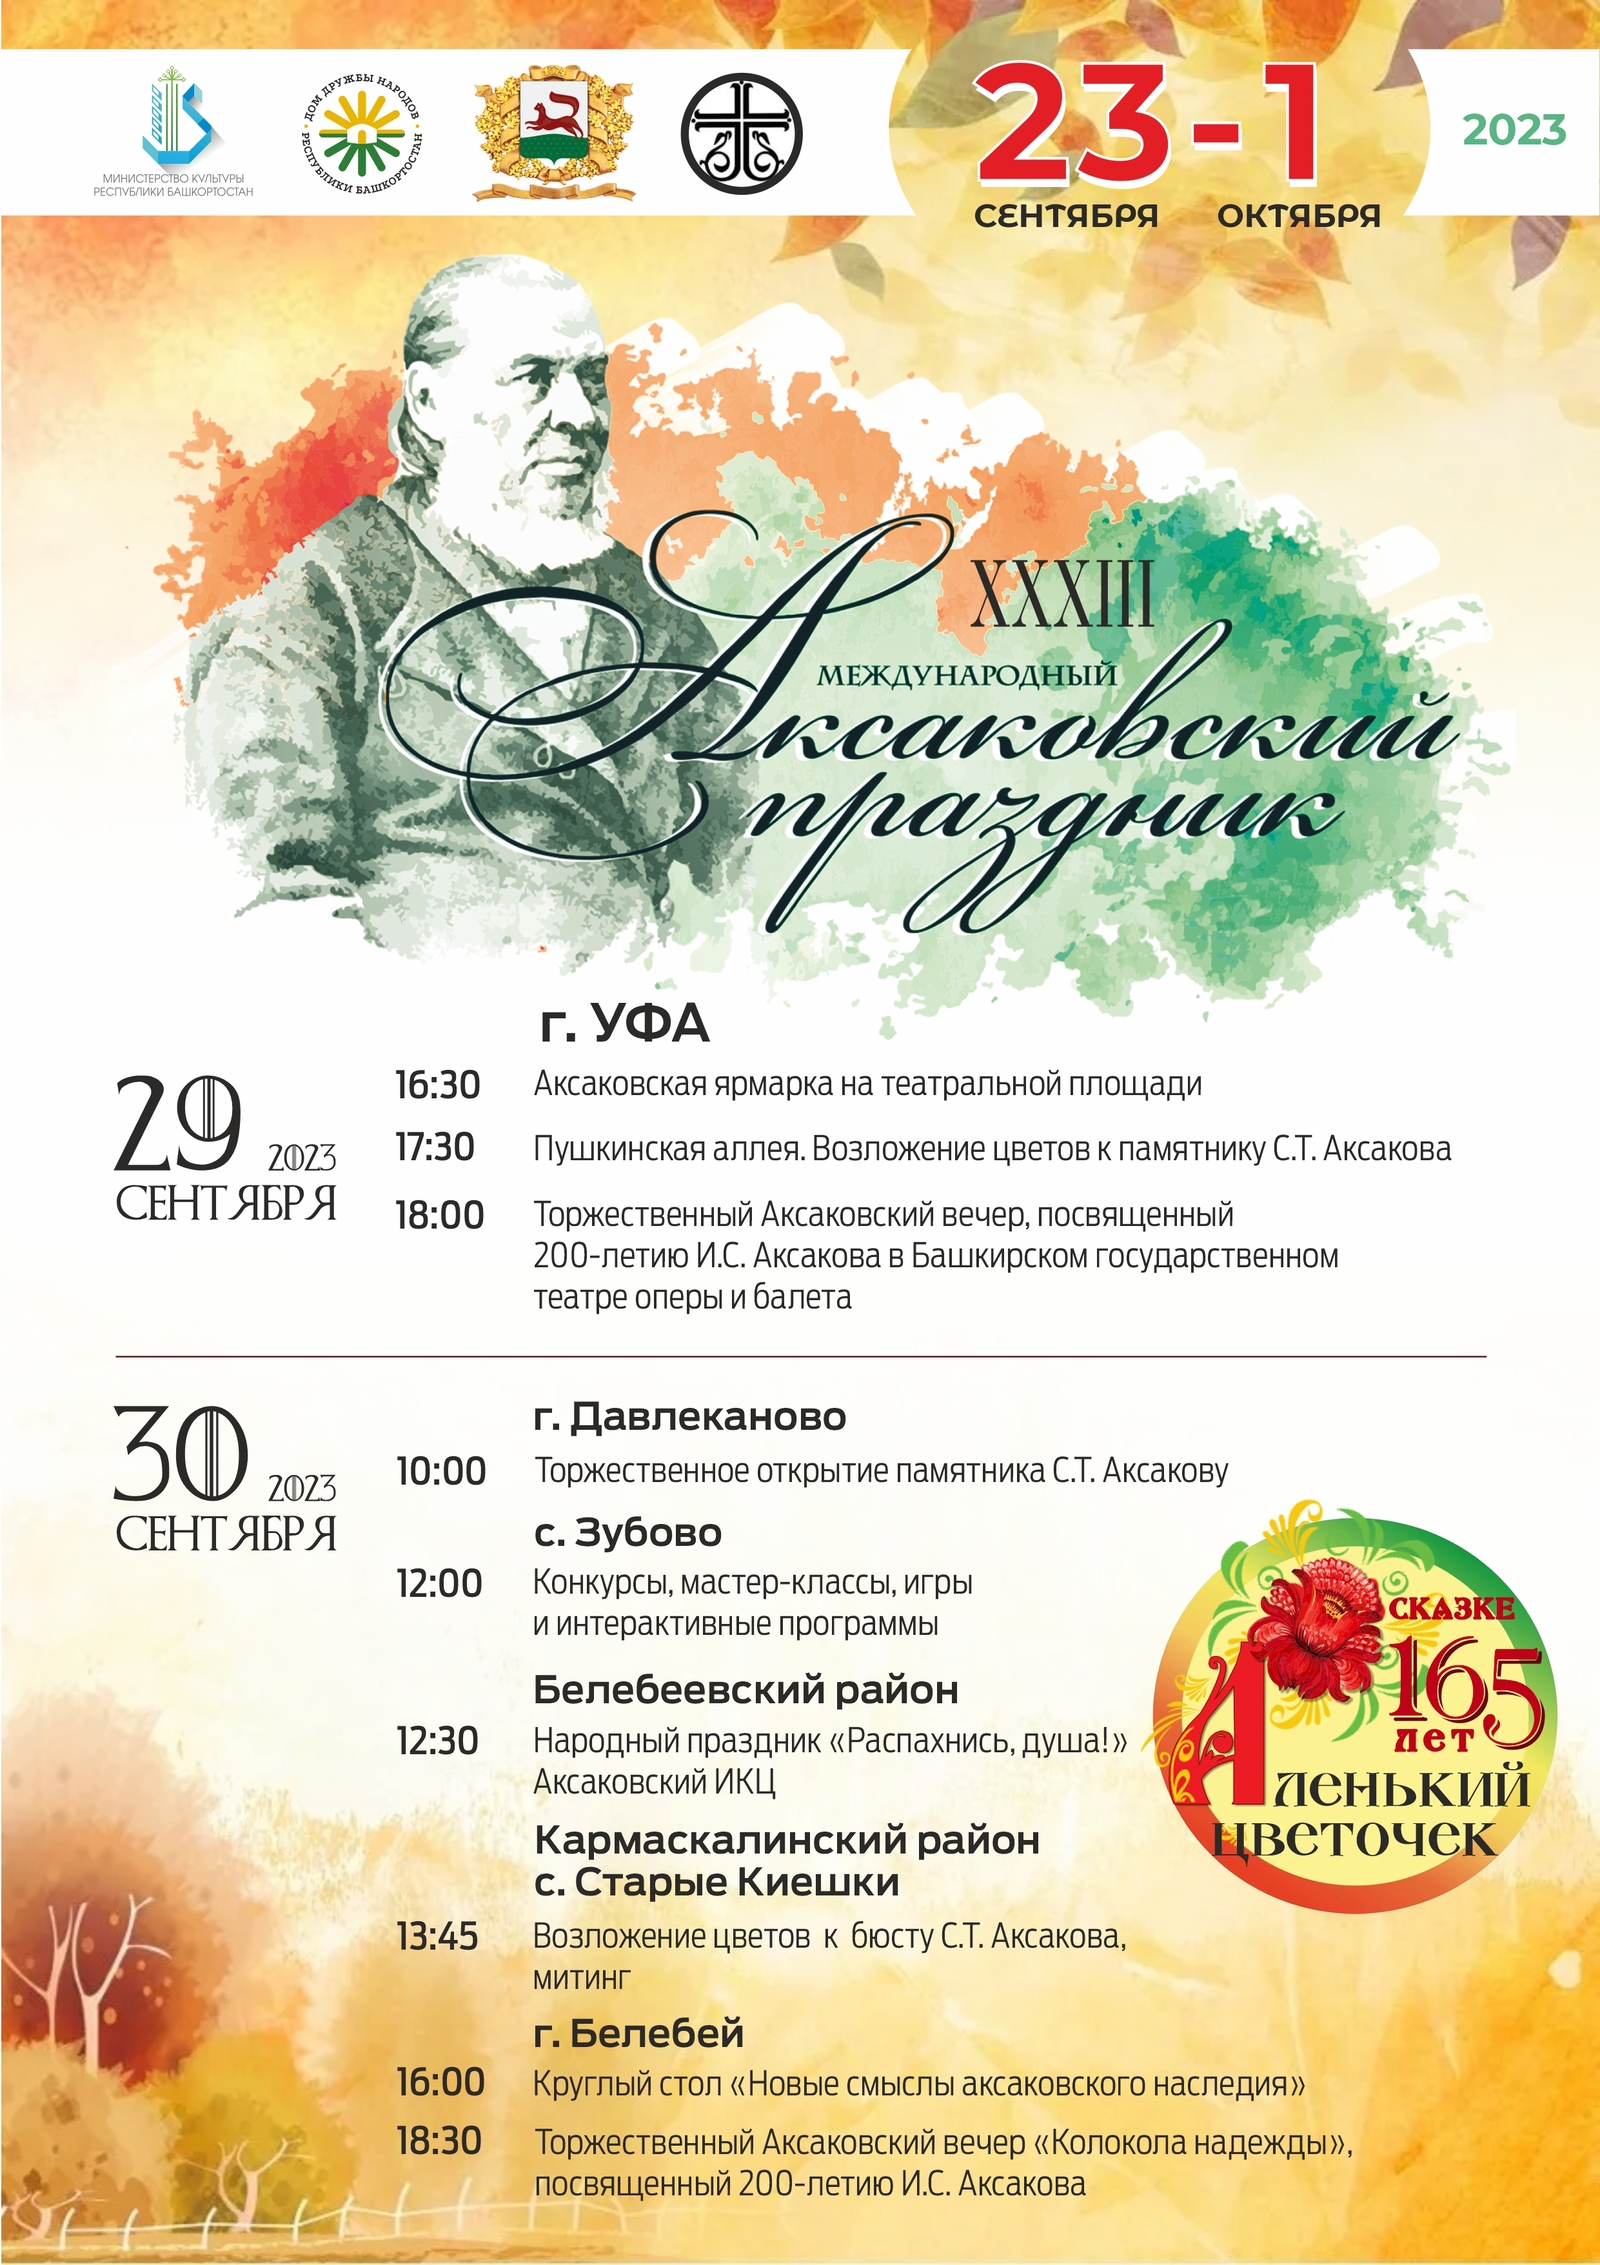 В Башкортостане пройдет традиционный Аксаковский праздник